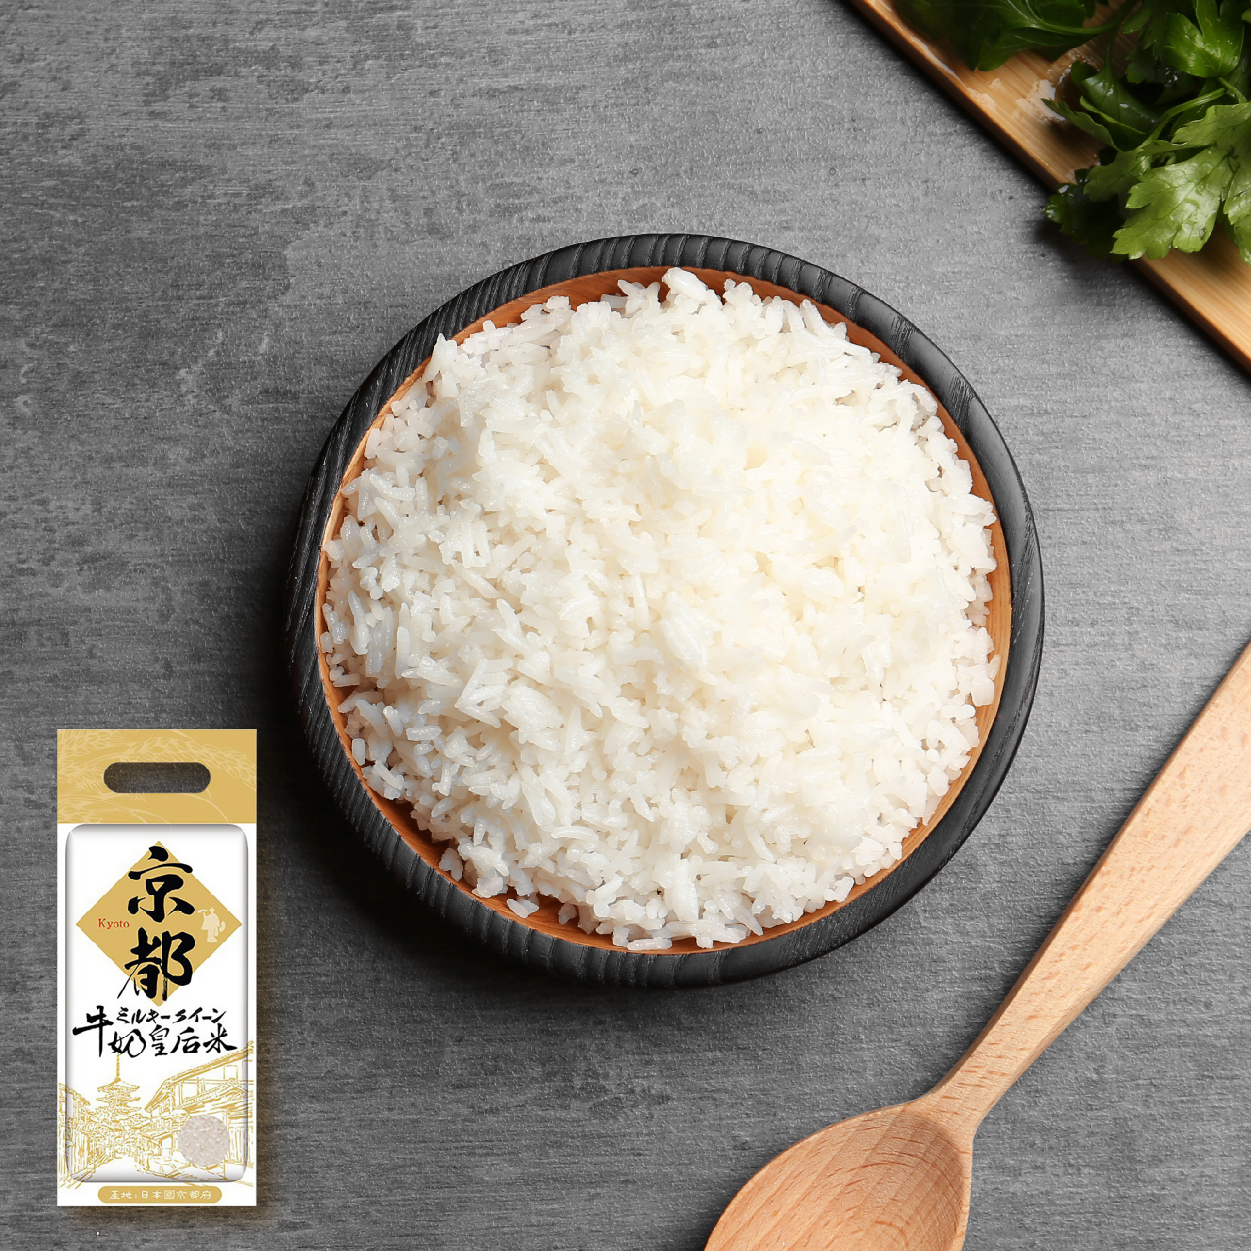 樂米穀場Lohas Rice 京都牛奶皇后米 來自優良風土的獨特好米